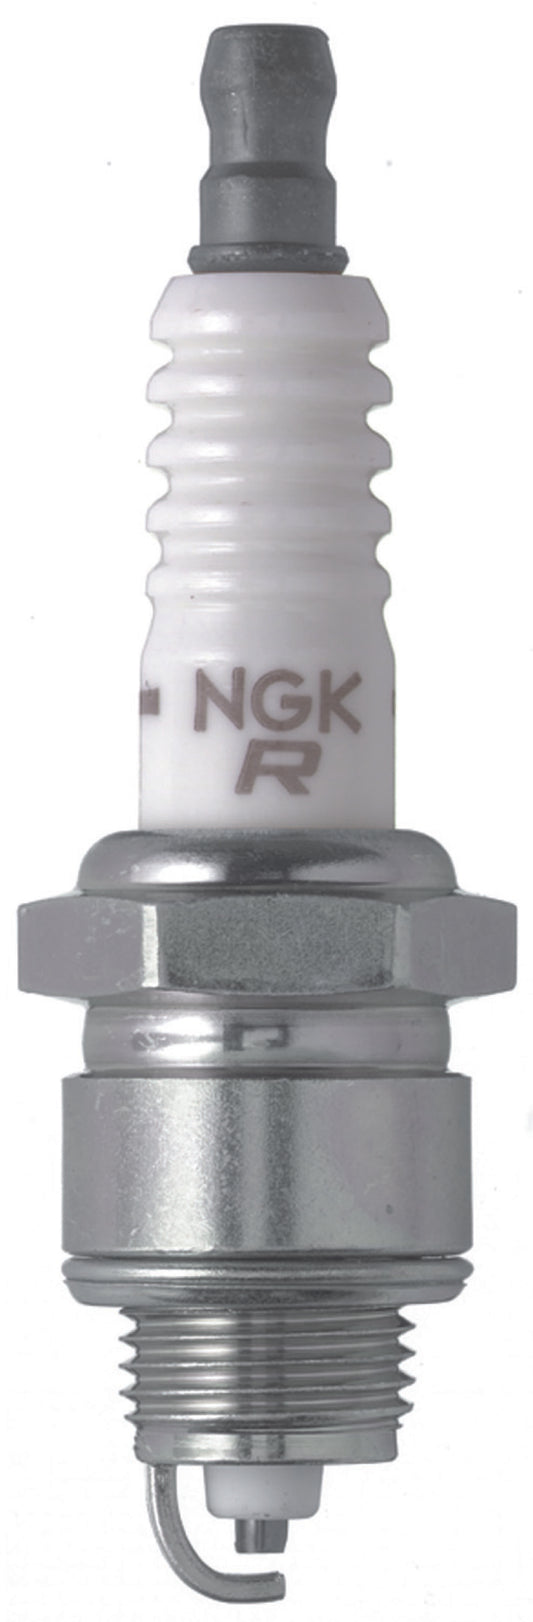 NGK V-Power Spark Plug Box of 4 (XR4)